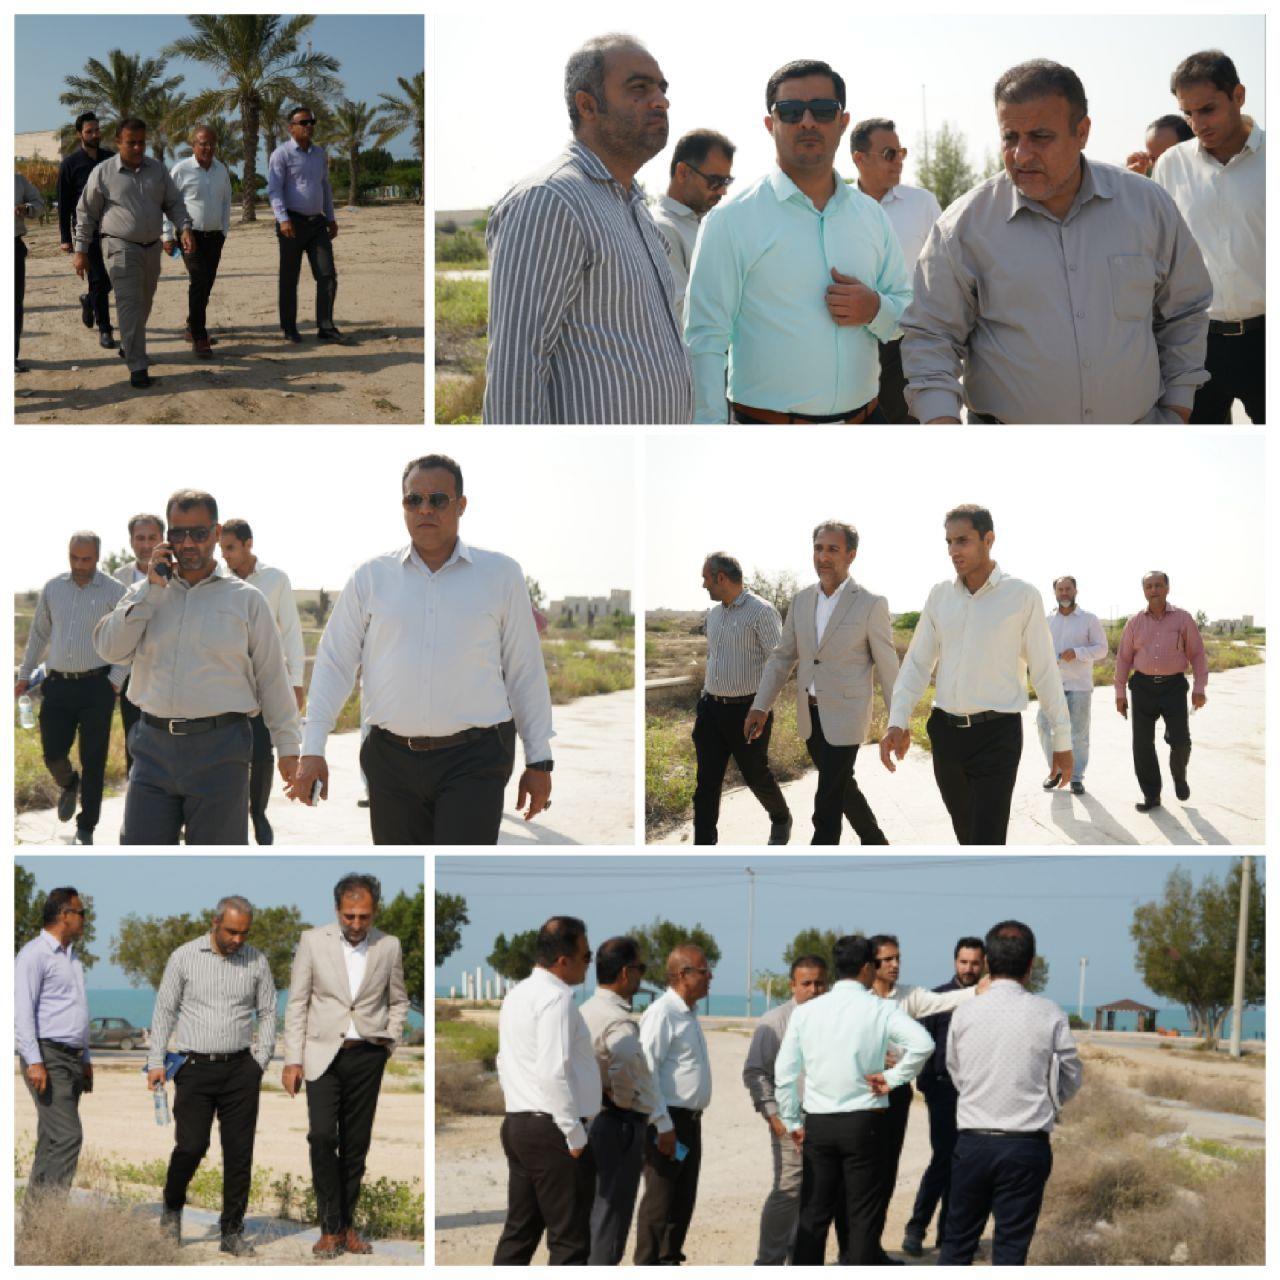 بازدید مدیران شهری از محدوده پارک لیان؛ دستور شهردار بوشهر برای بازسازی و تکمیل پارک روبروی لیان